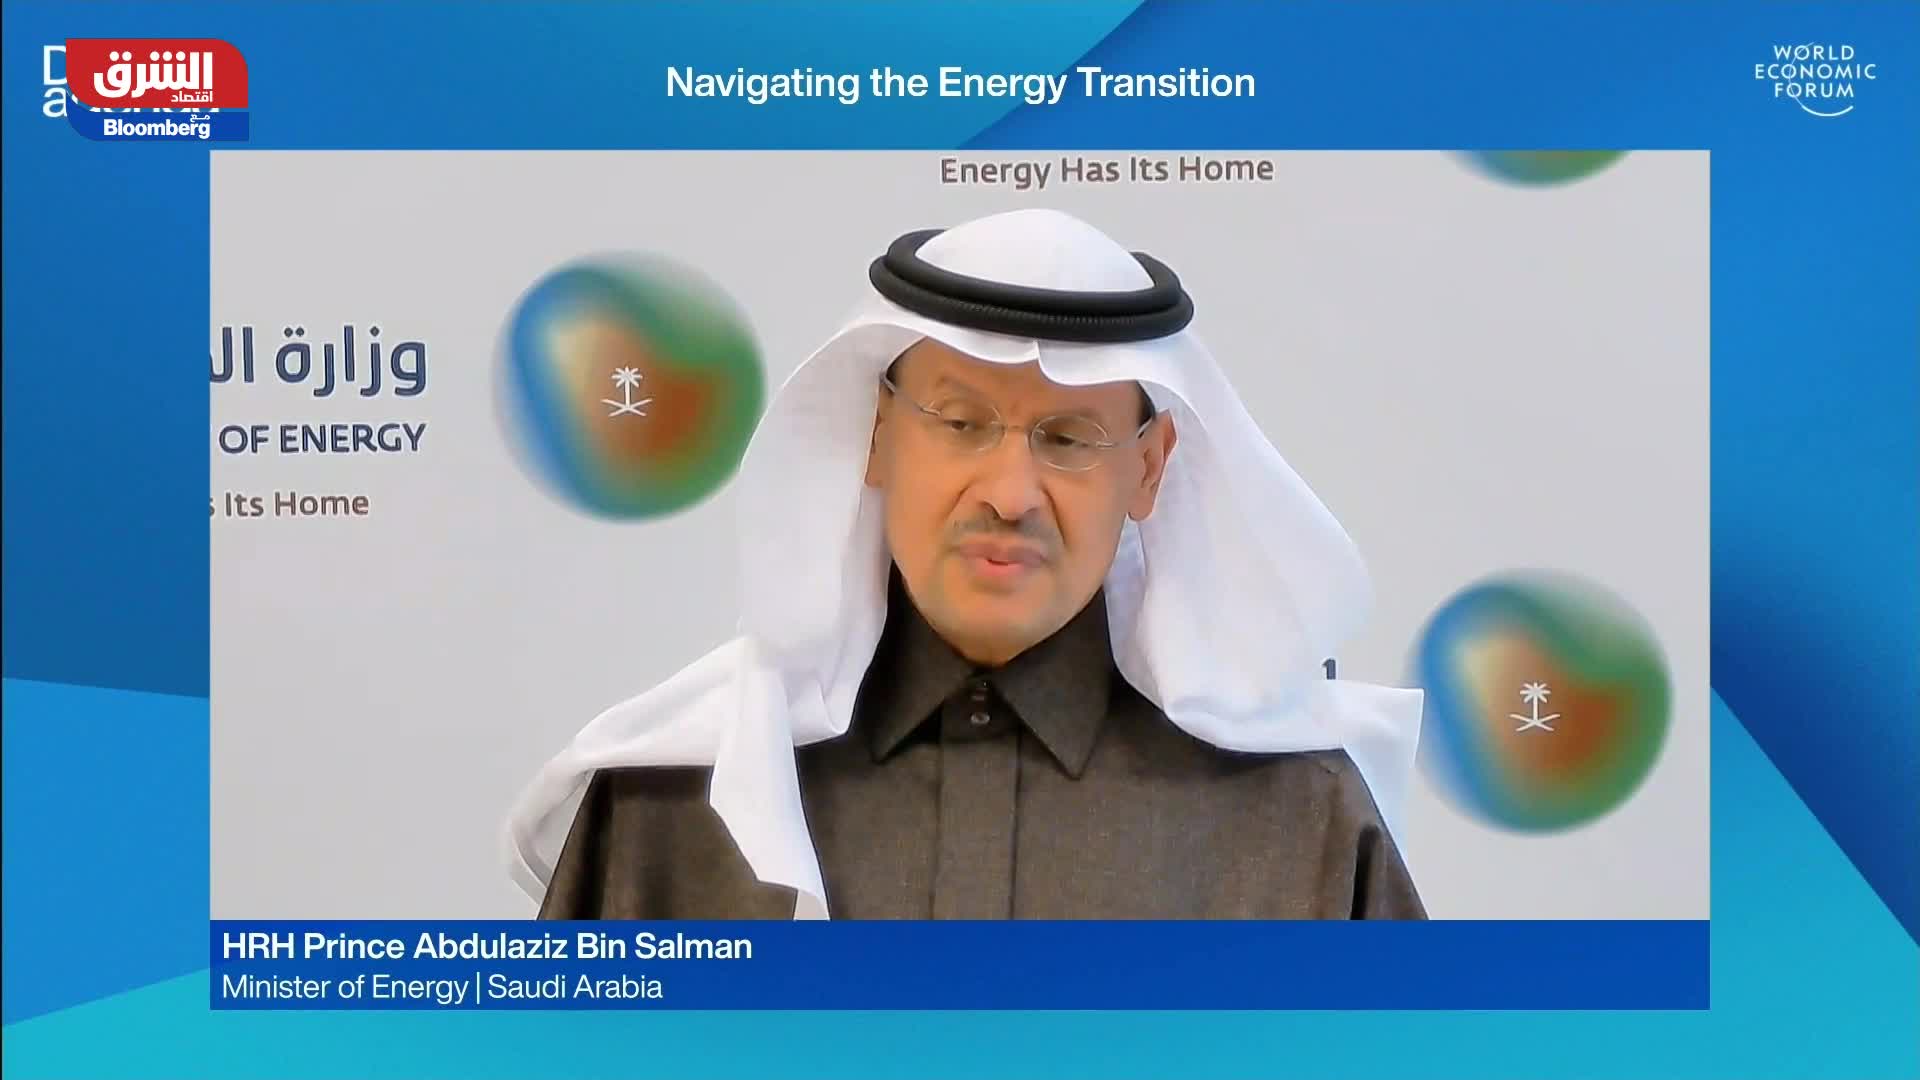 الأمير عبد العزيز بن سلمان: يجب أن يتوحد العالم حول فكرة تقليص انبعاثات الكربون